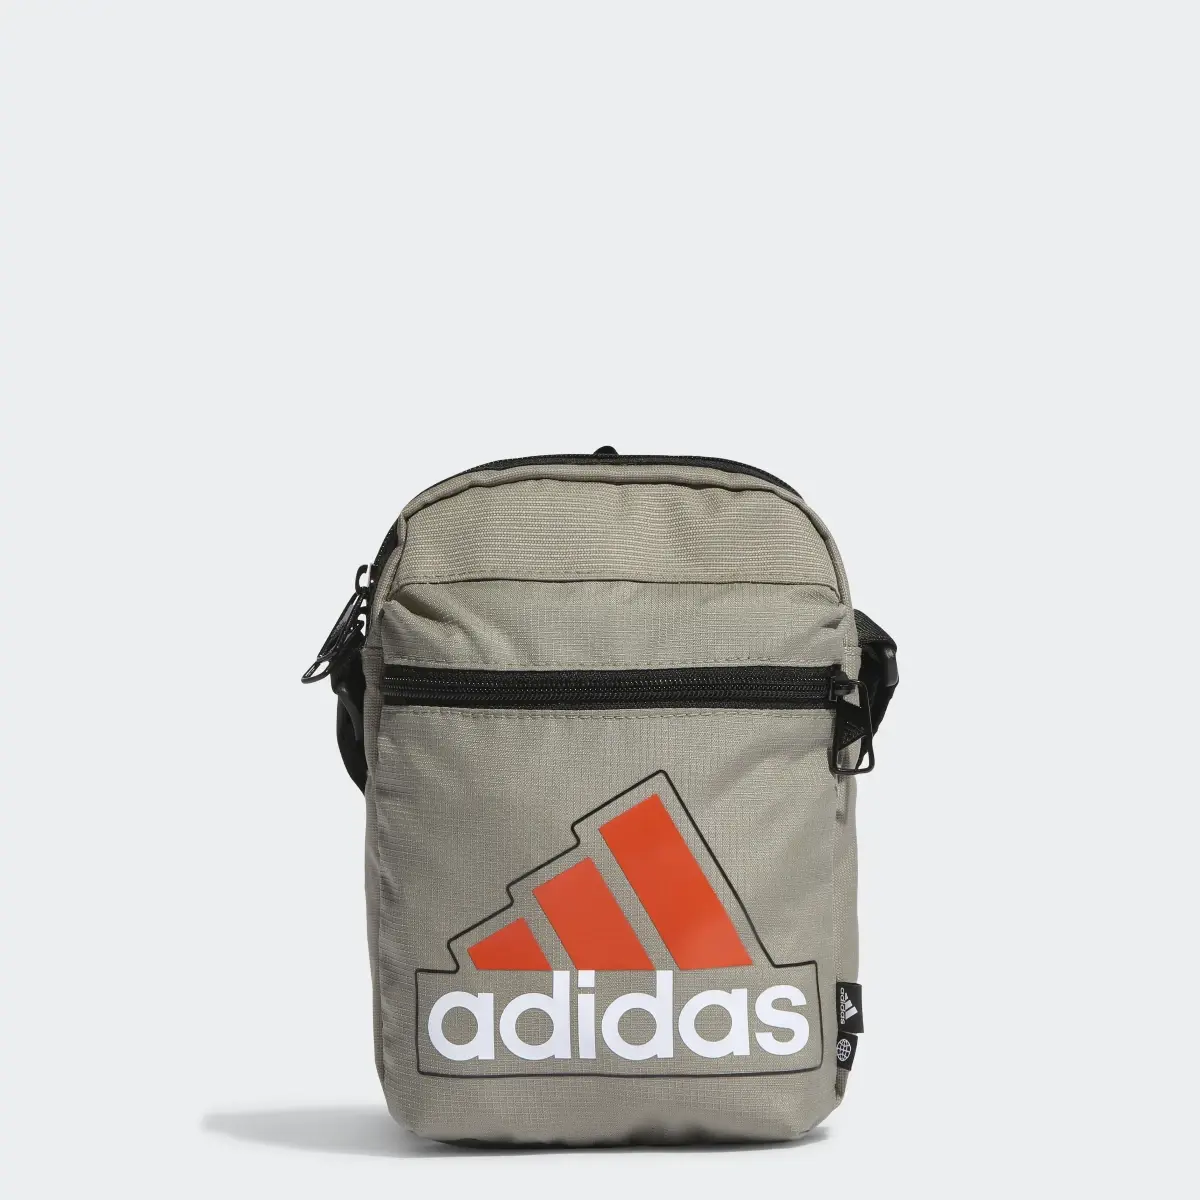 Adidas Essentials Seasonal Organizer Tasche. 1